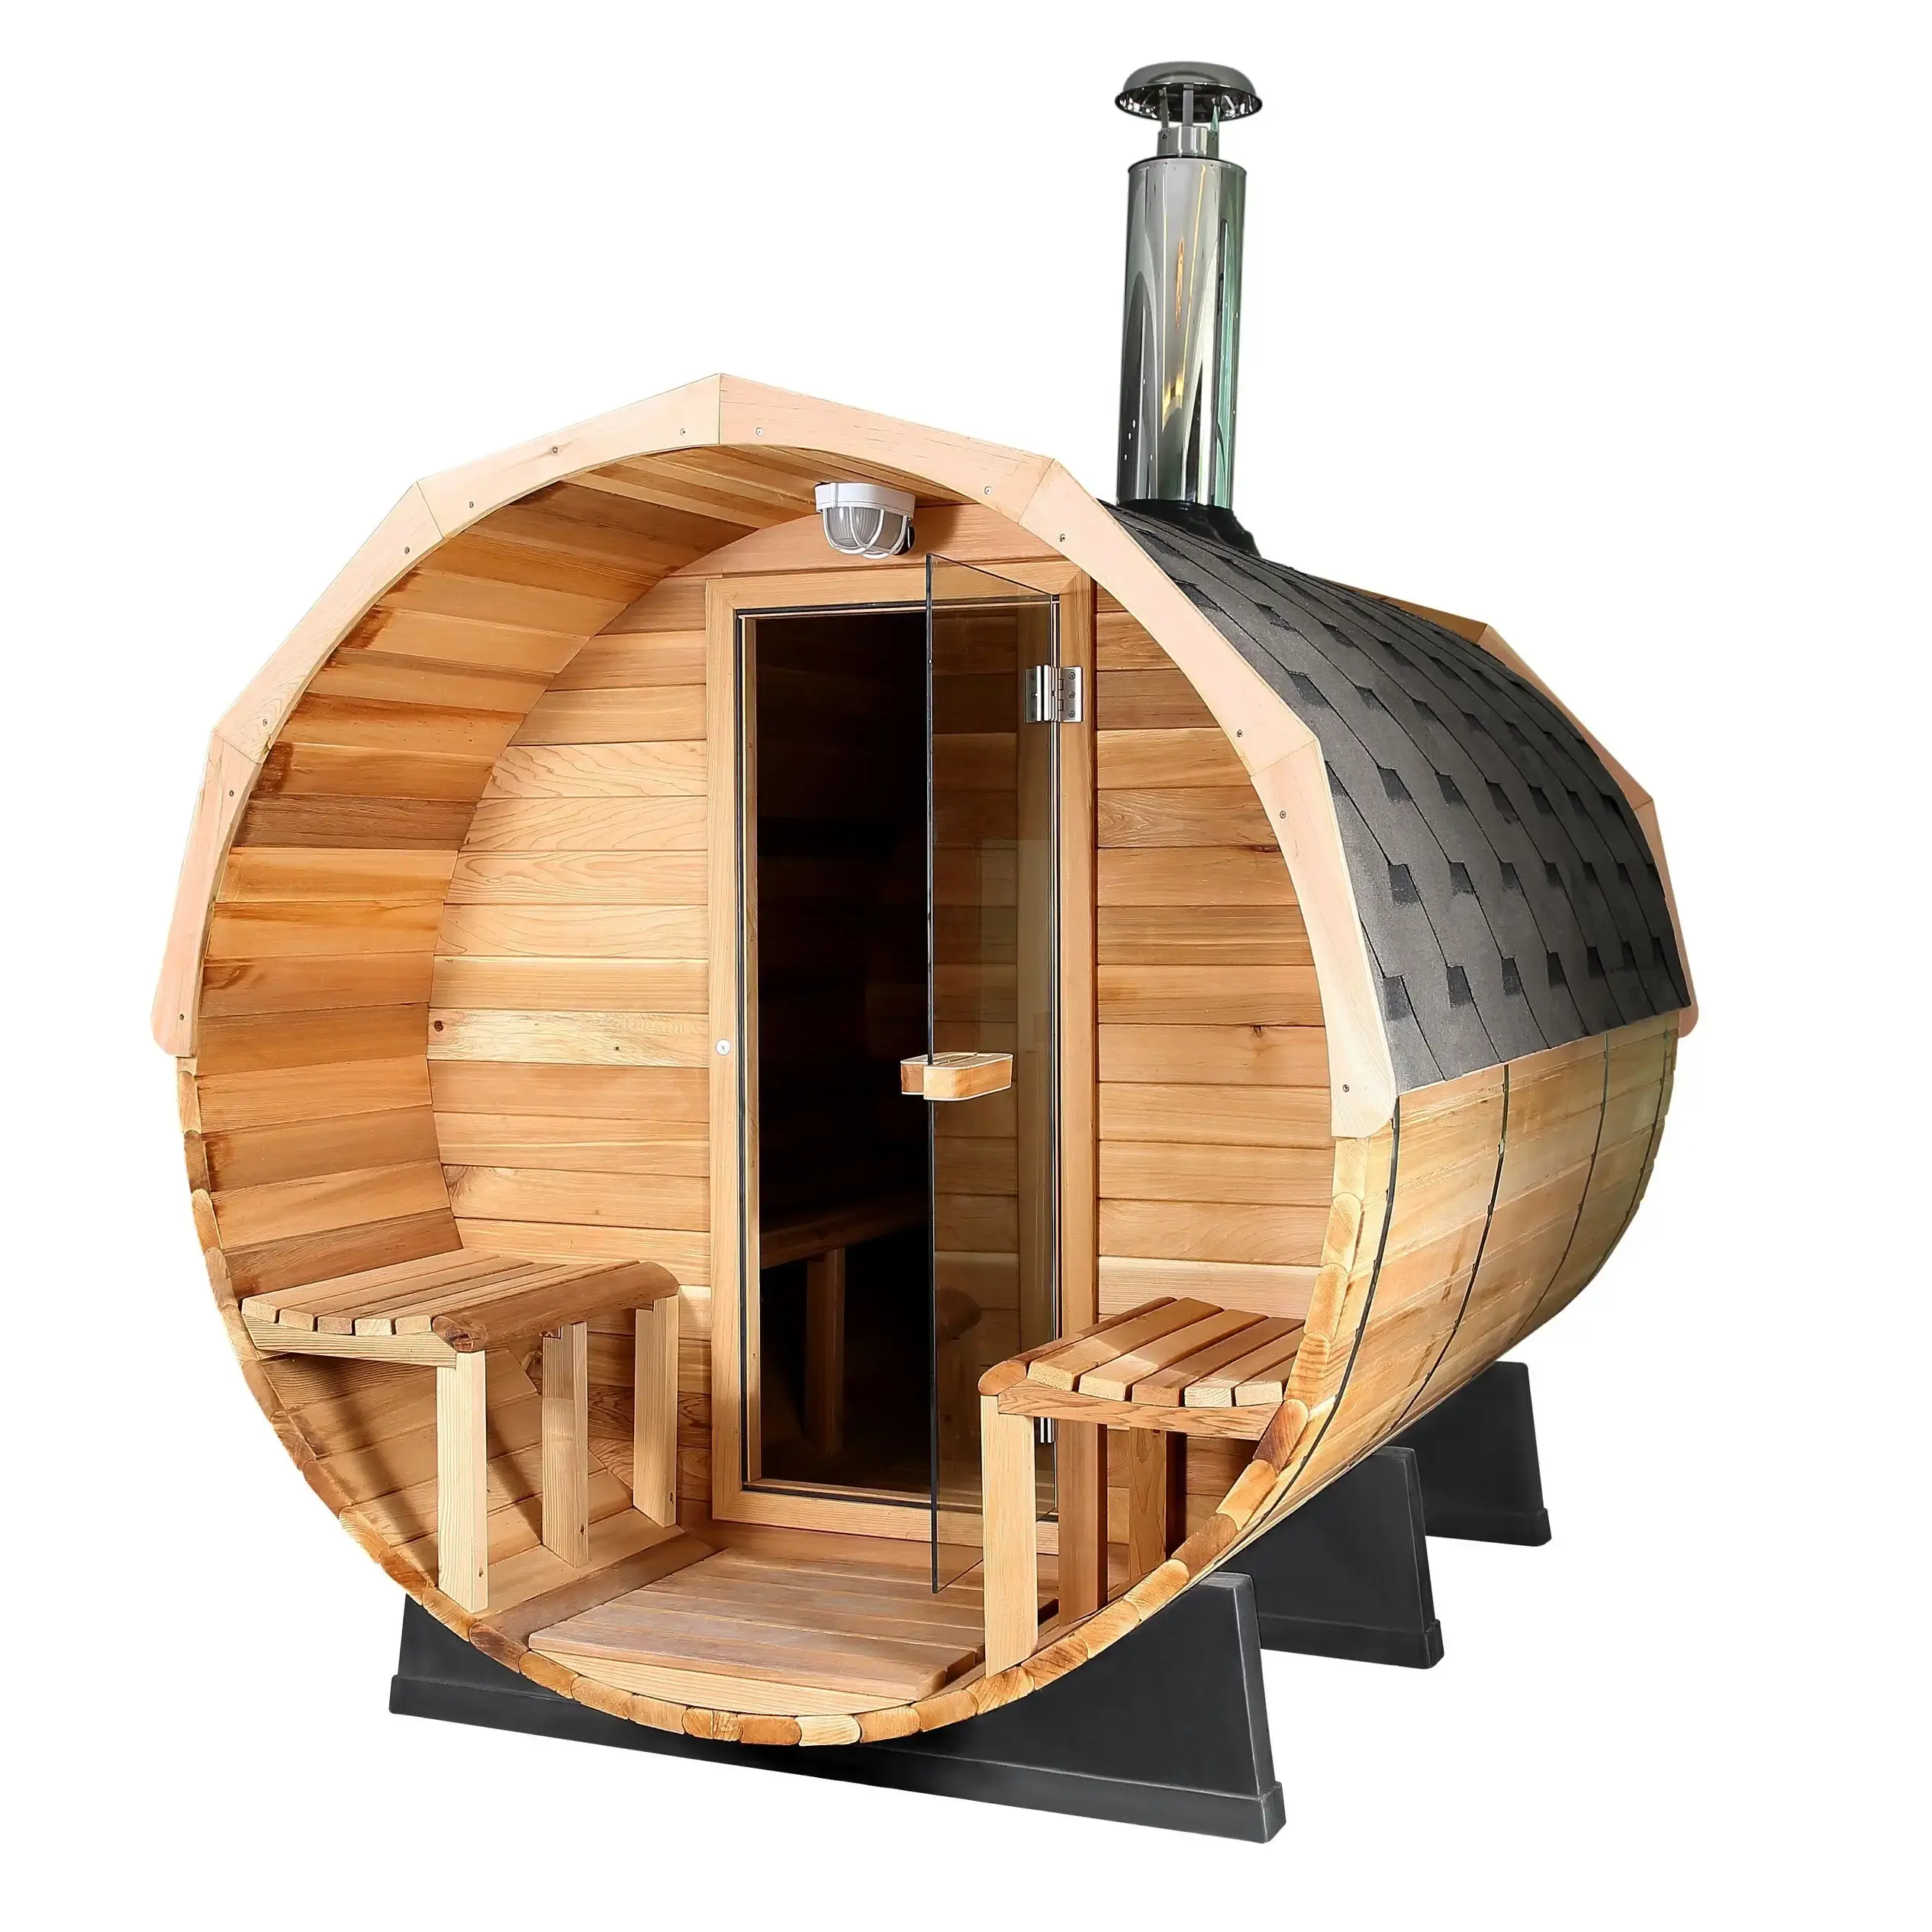 Panoramic Outdoor 1.8*2.4m Red Cedar Barrel Sauna With Wood Stove